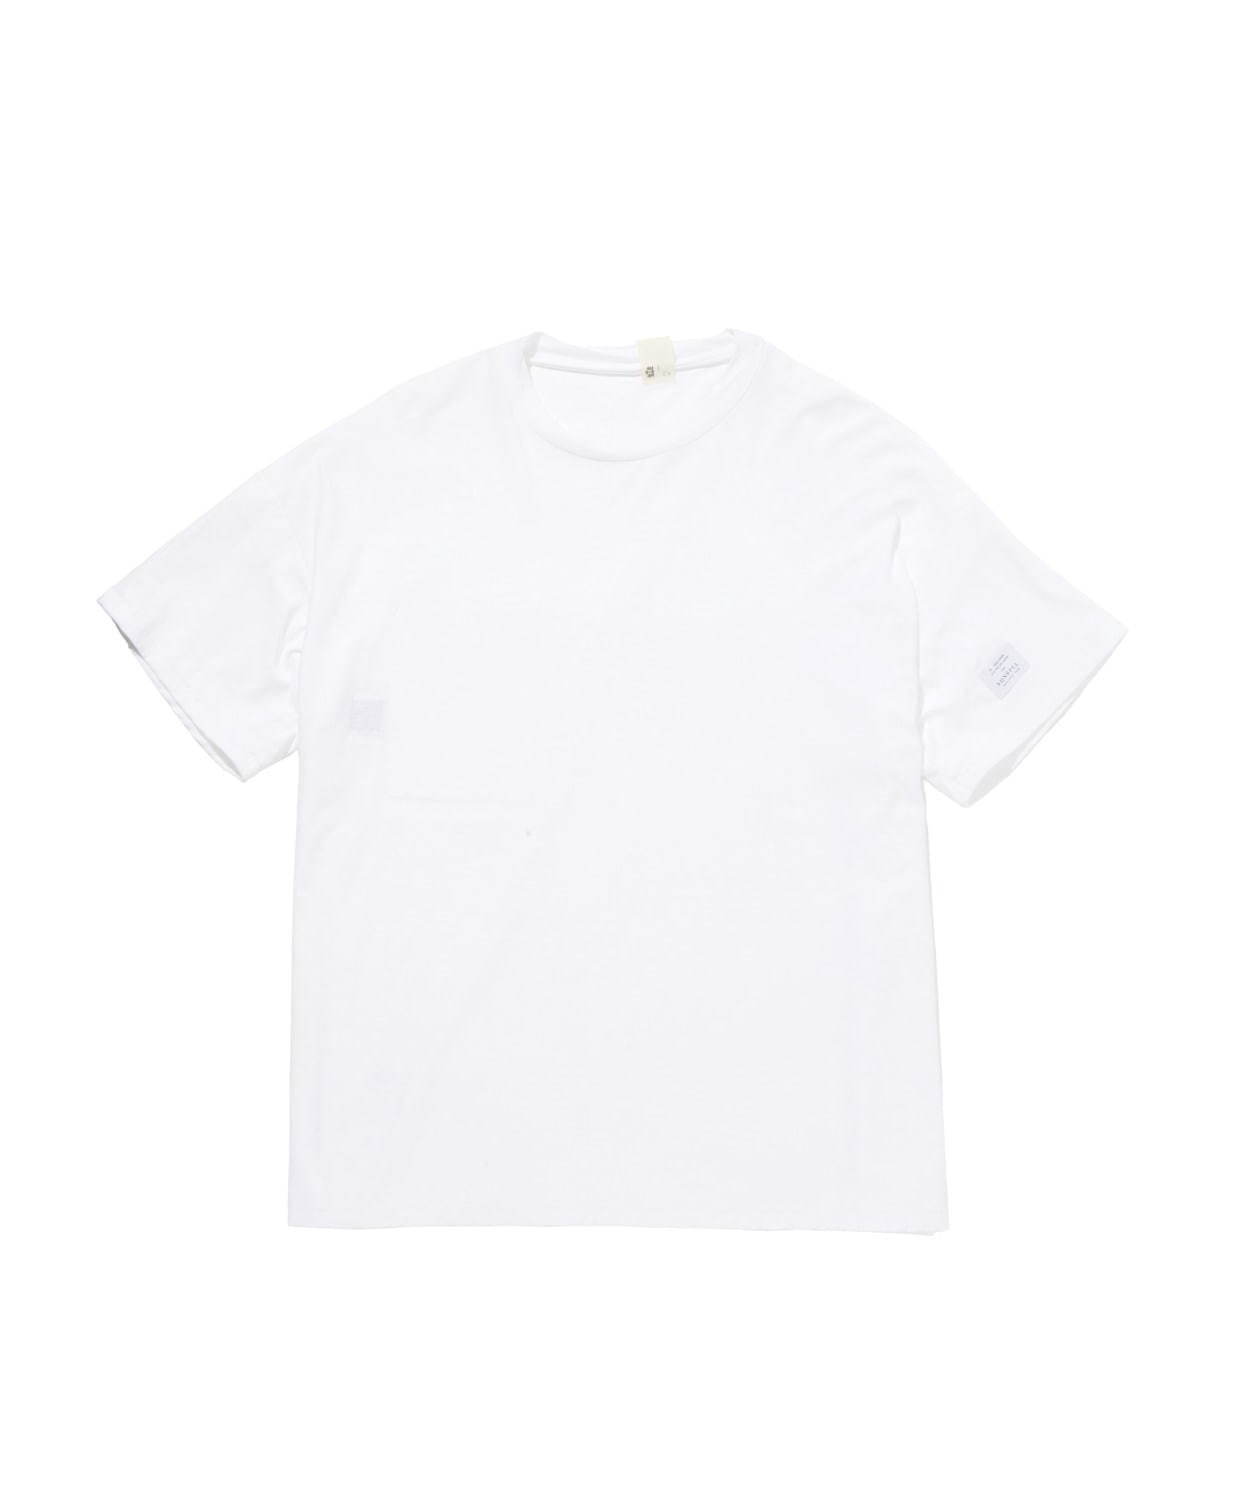 メンズ白tシャツ特集 人気ブランドのおすすめ無地tシャツやロゴt おしゃれコーデの定番アイテム ファッションプレス